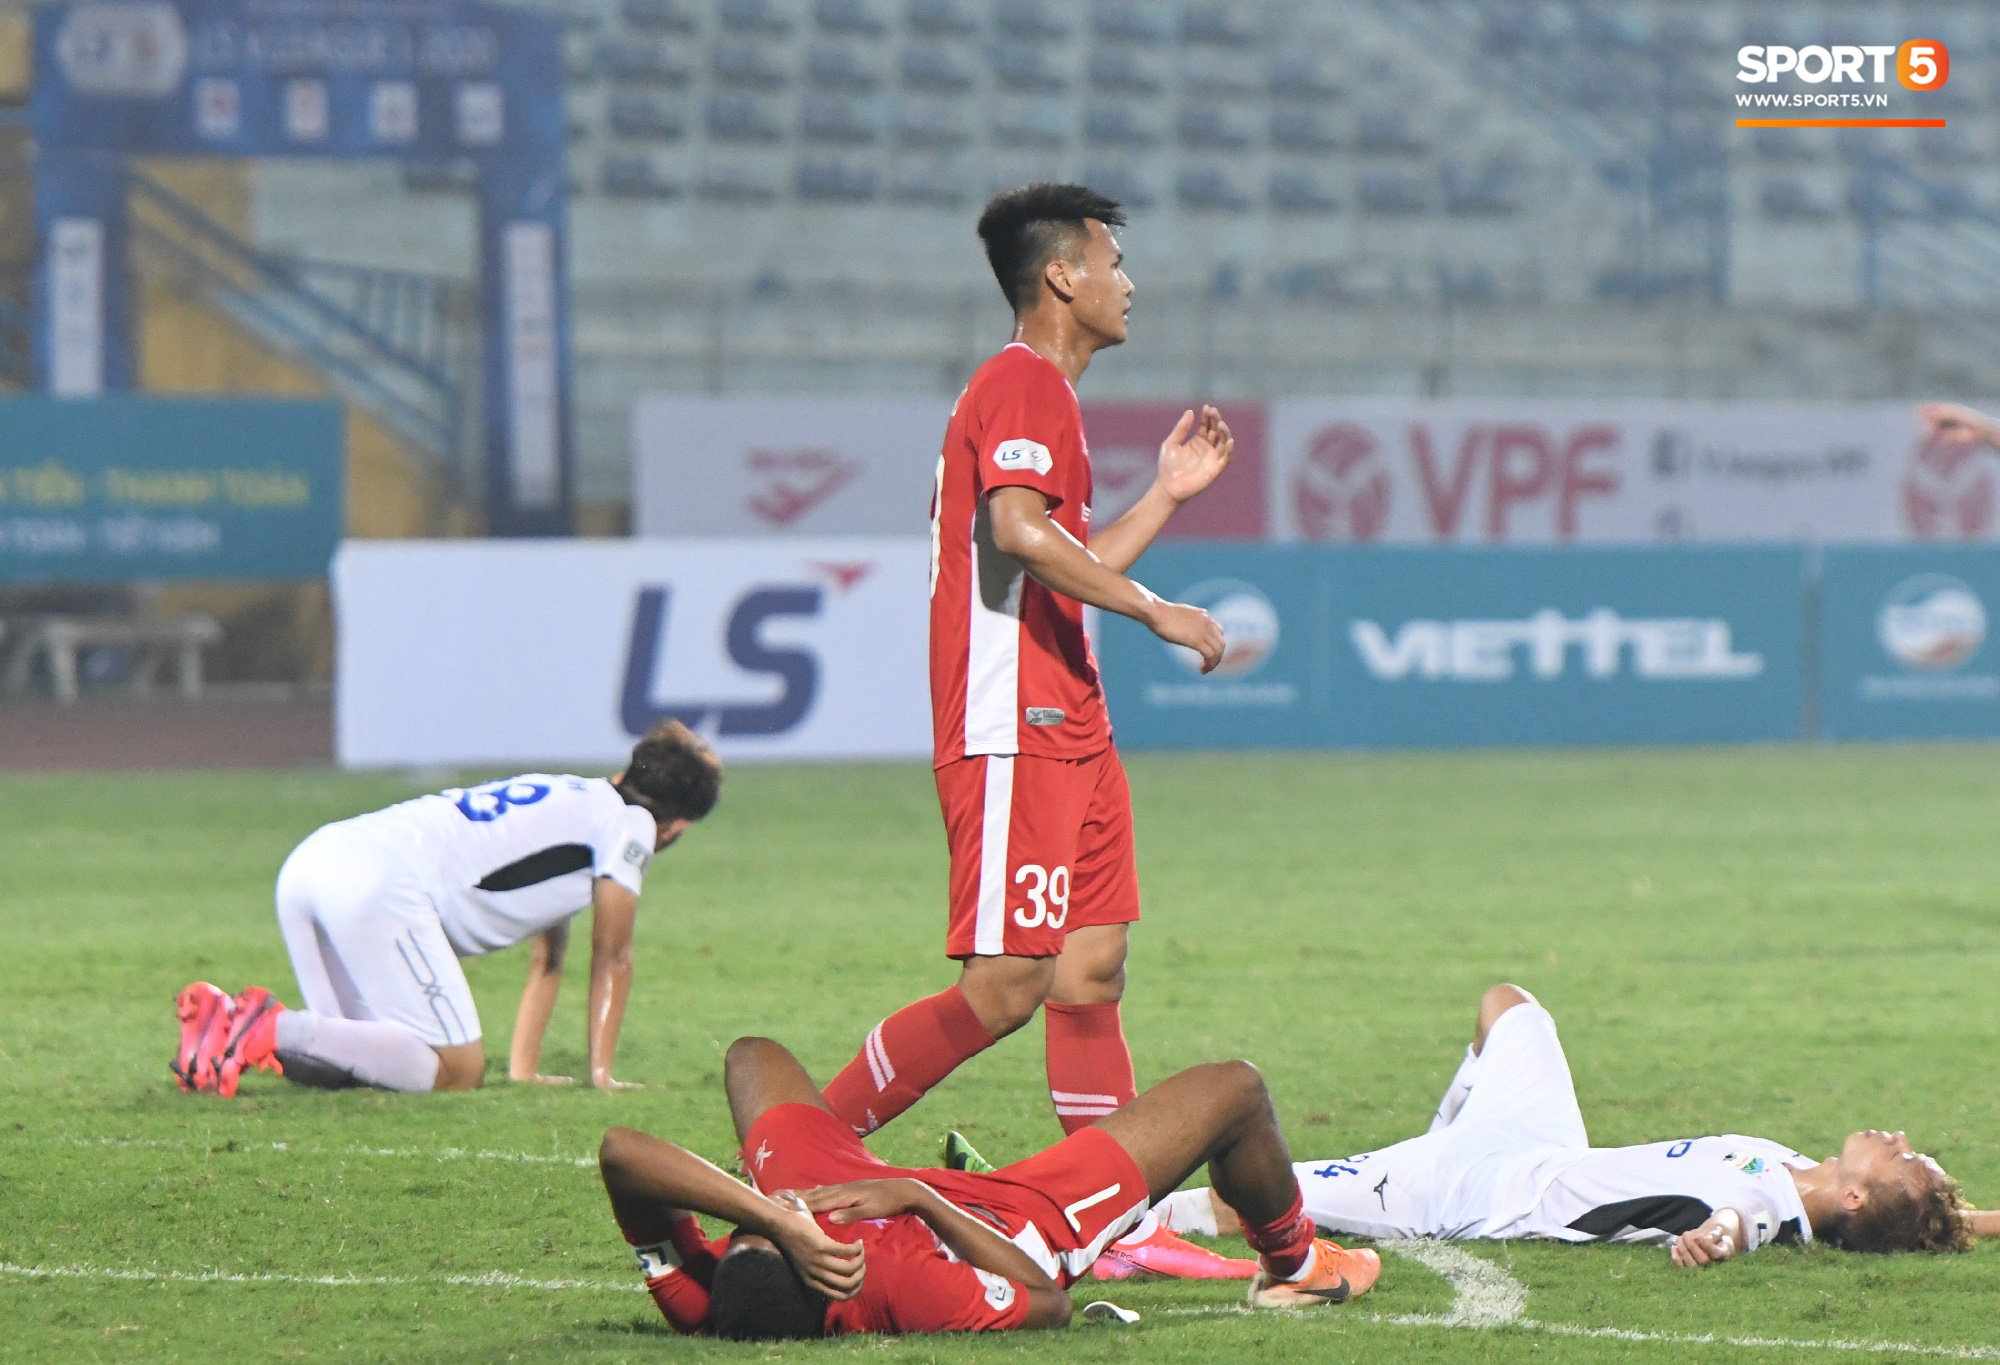 Cựu tuyển thủ U20 hồi sinh thần kỳ 2 năm sau chấn thương kinh hoàng nhất nhì bóng đá Việt, ghi điểm mạnh với trợ lý Lee Young-jin   - Ảnh 8.